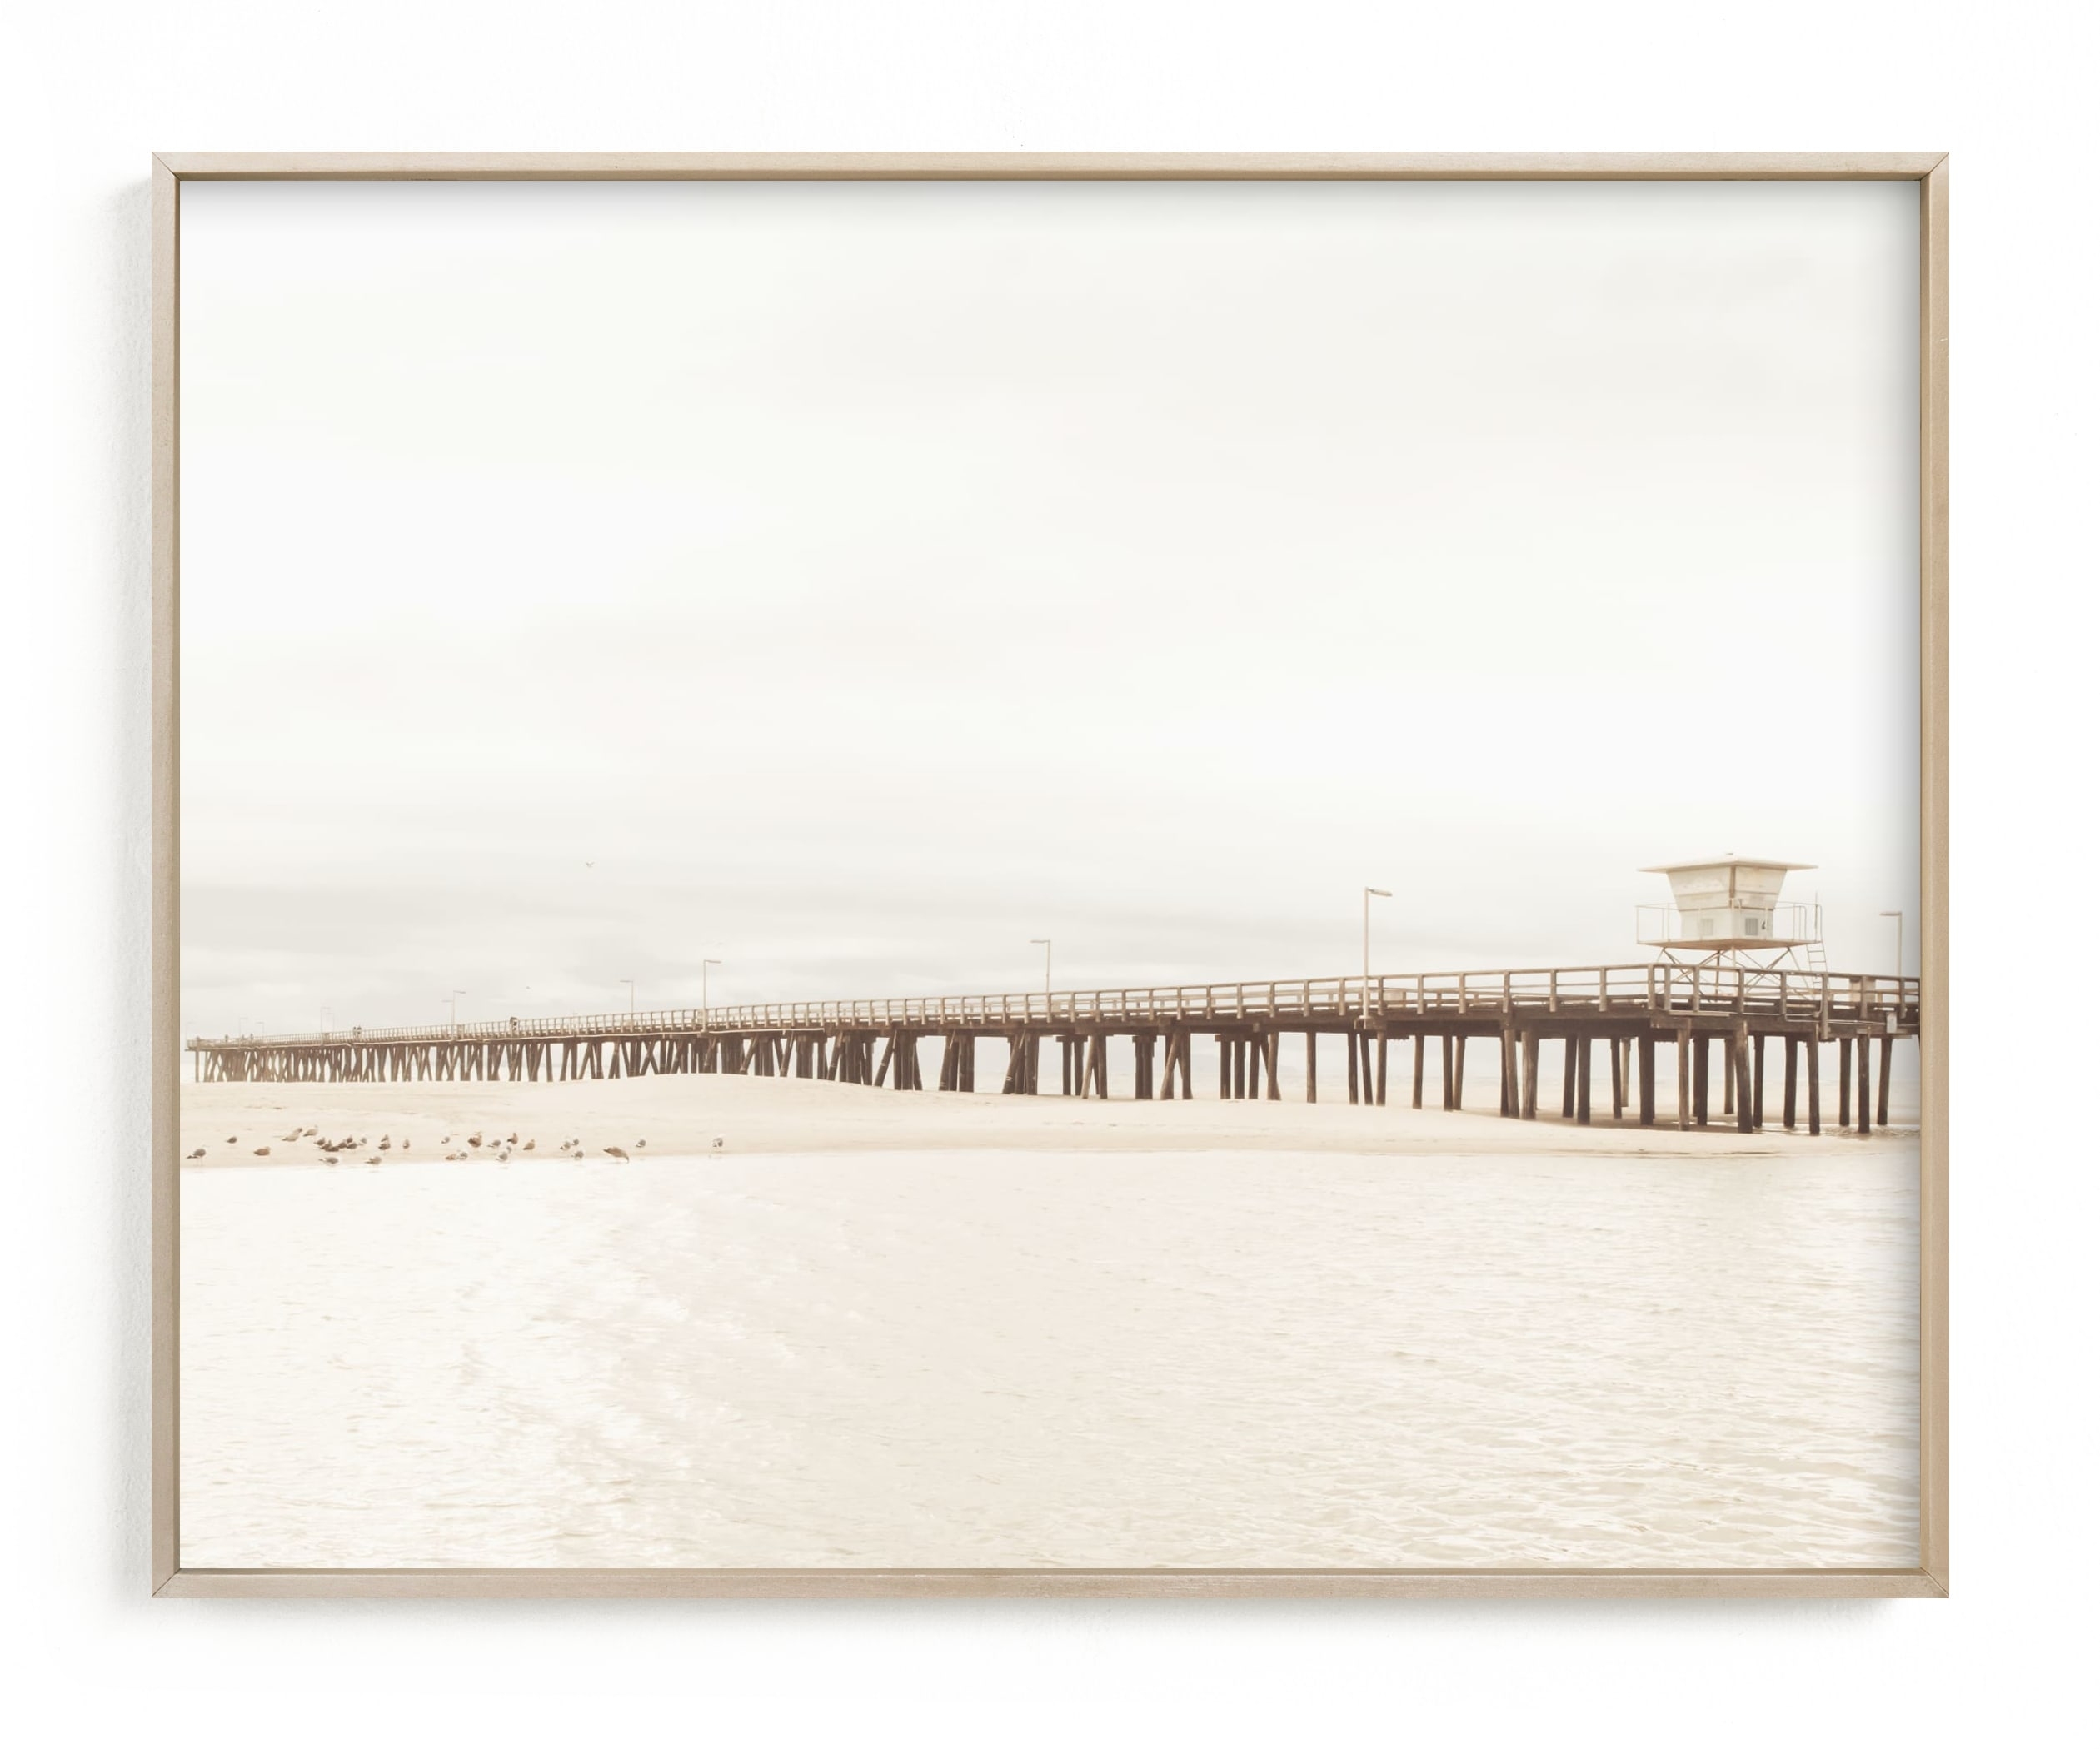 stormy pier - 20 x 16 - Image 0